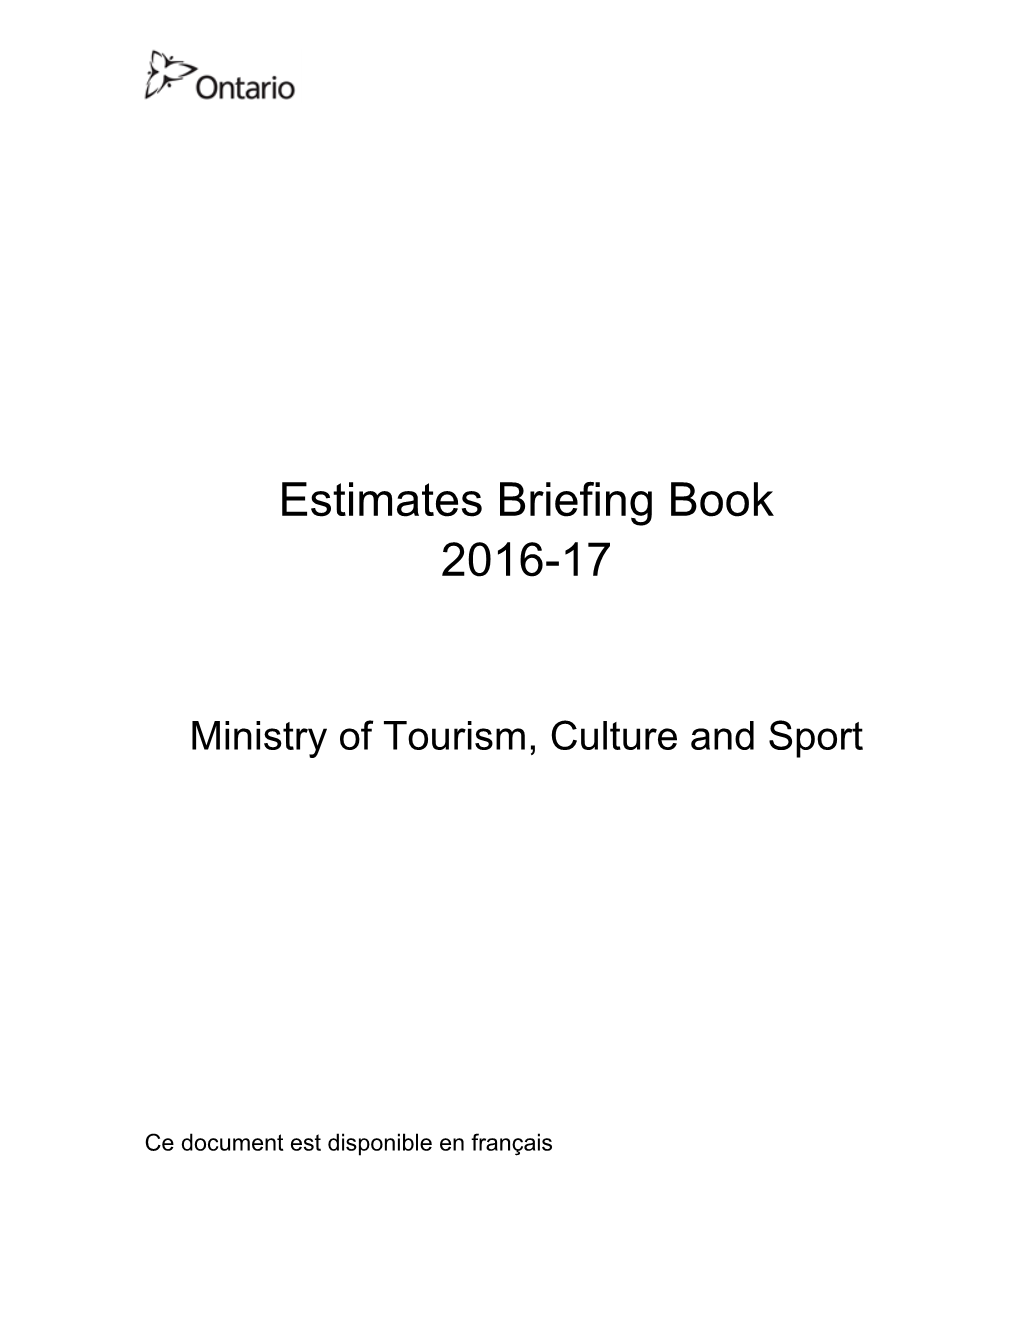 Estimates Briefing Book 2016-17